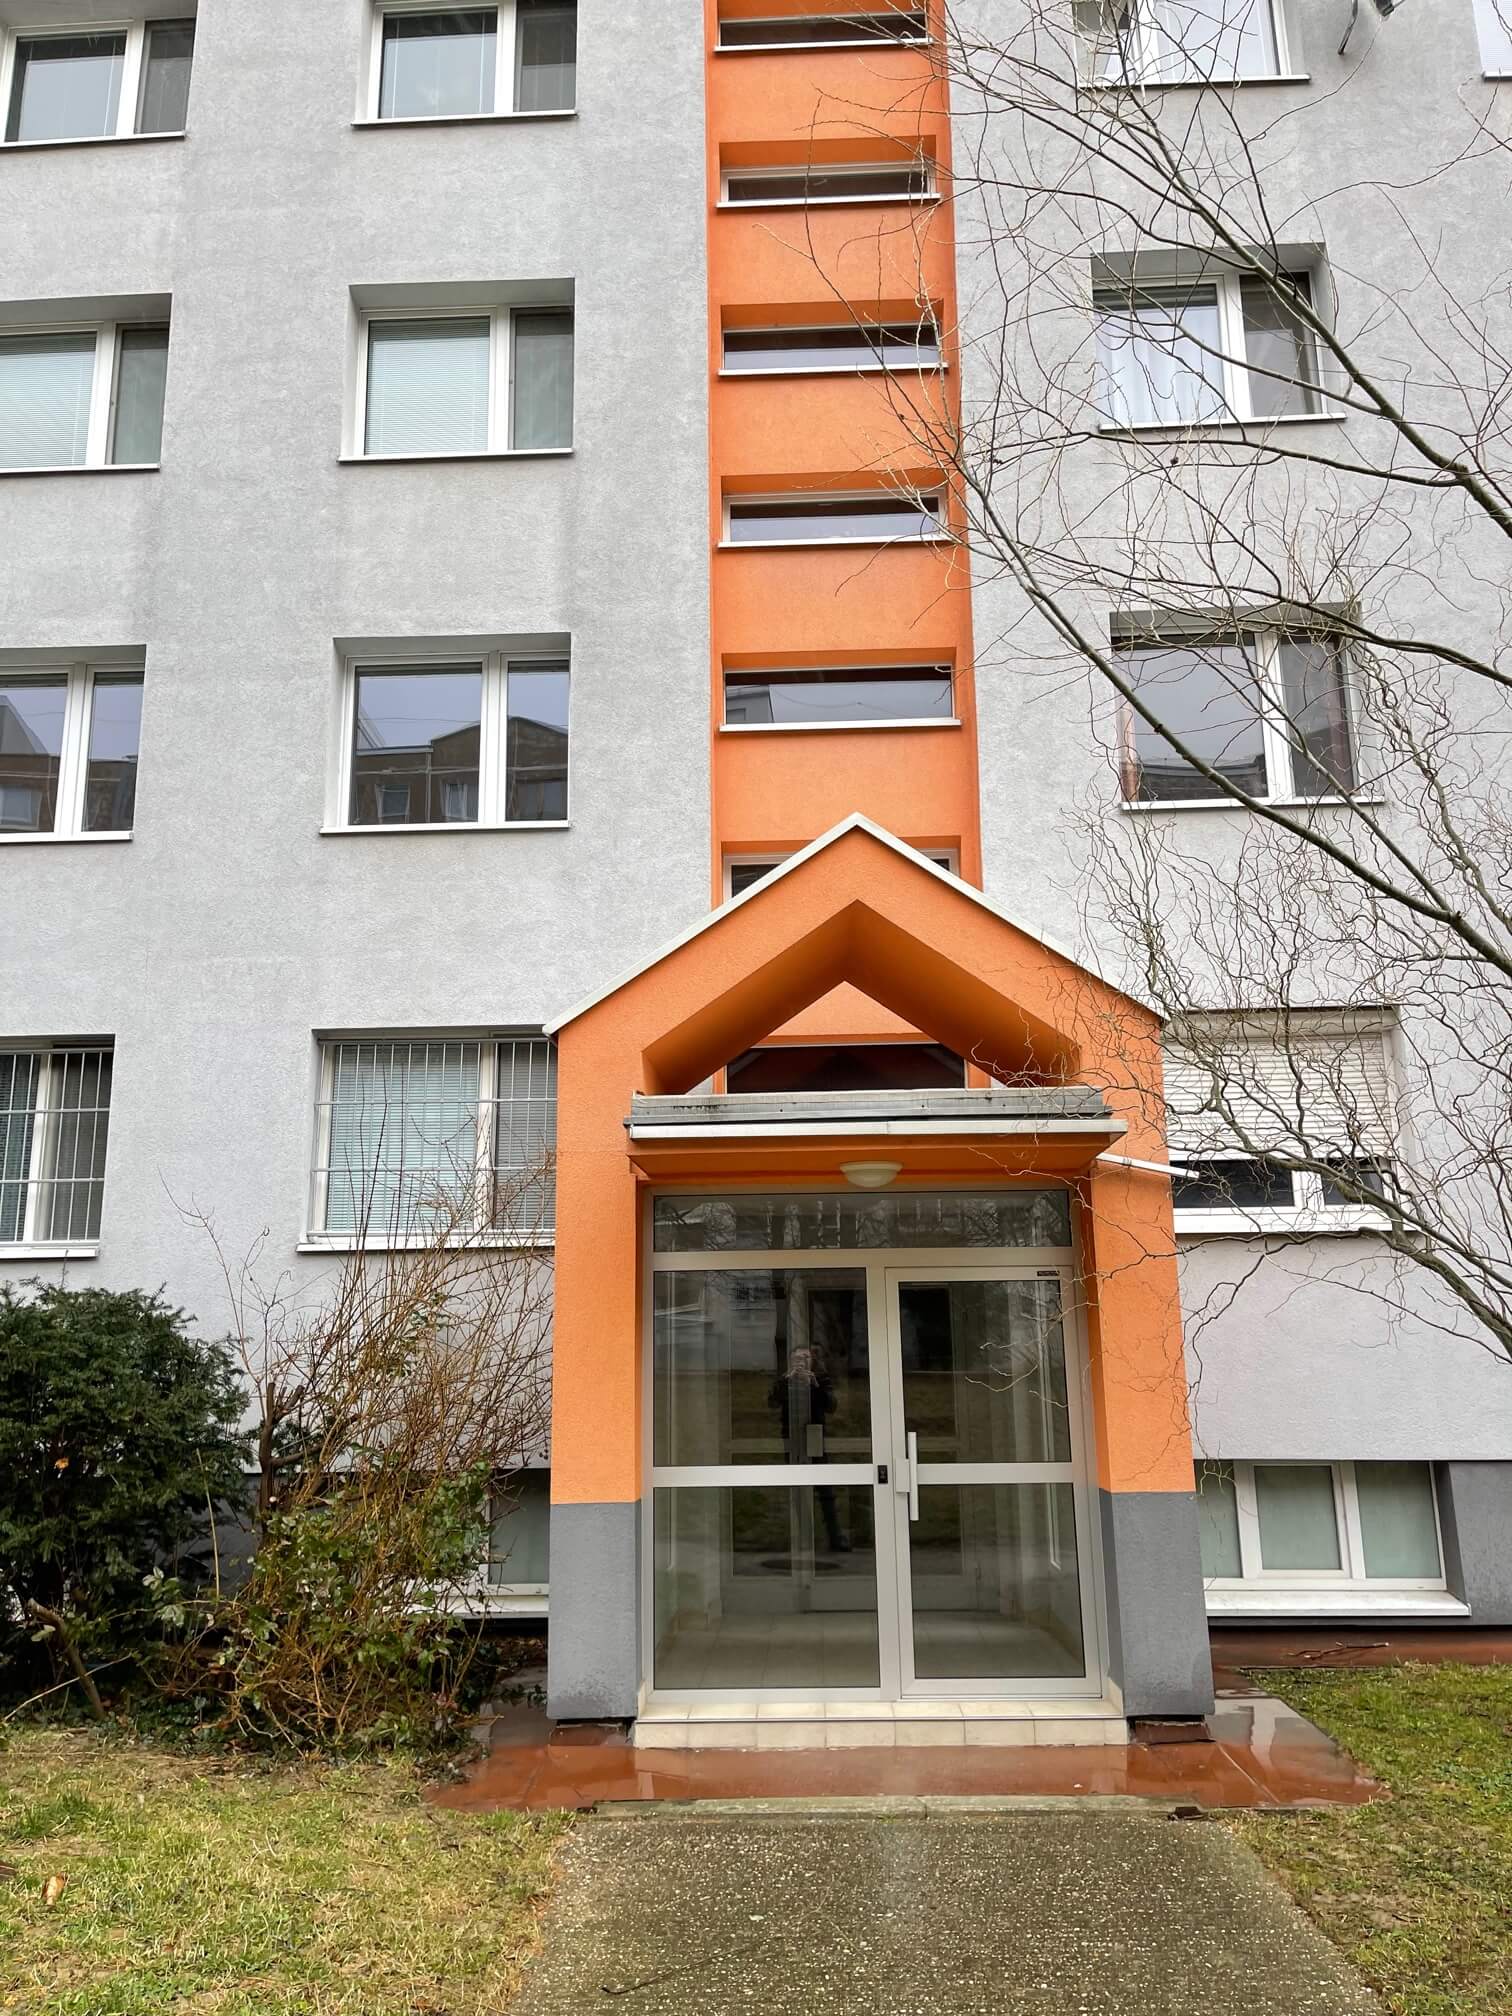 Prenajaté: Izby na prenájom v 3 izbovom byte, Karlovka, Kolísková 6 v Bratislave, 300€ izba, izba má 20m2 s  balkónom,-10